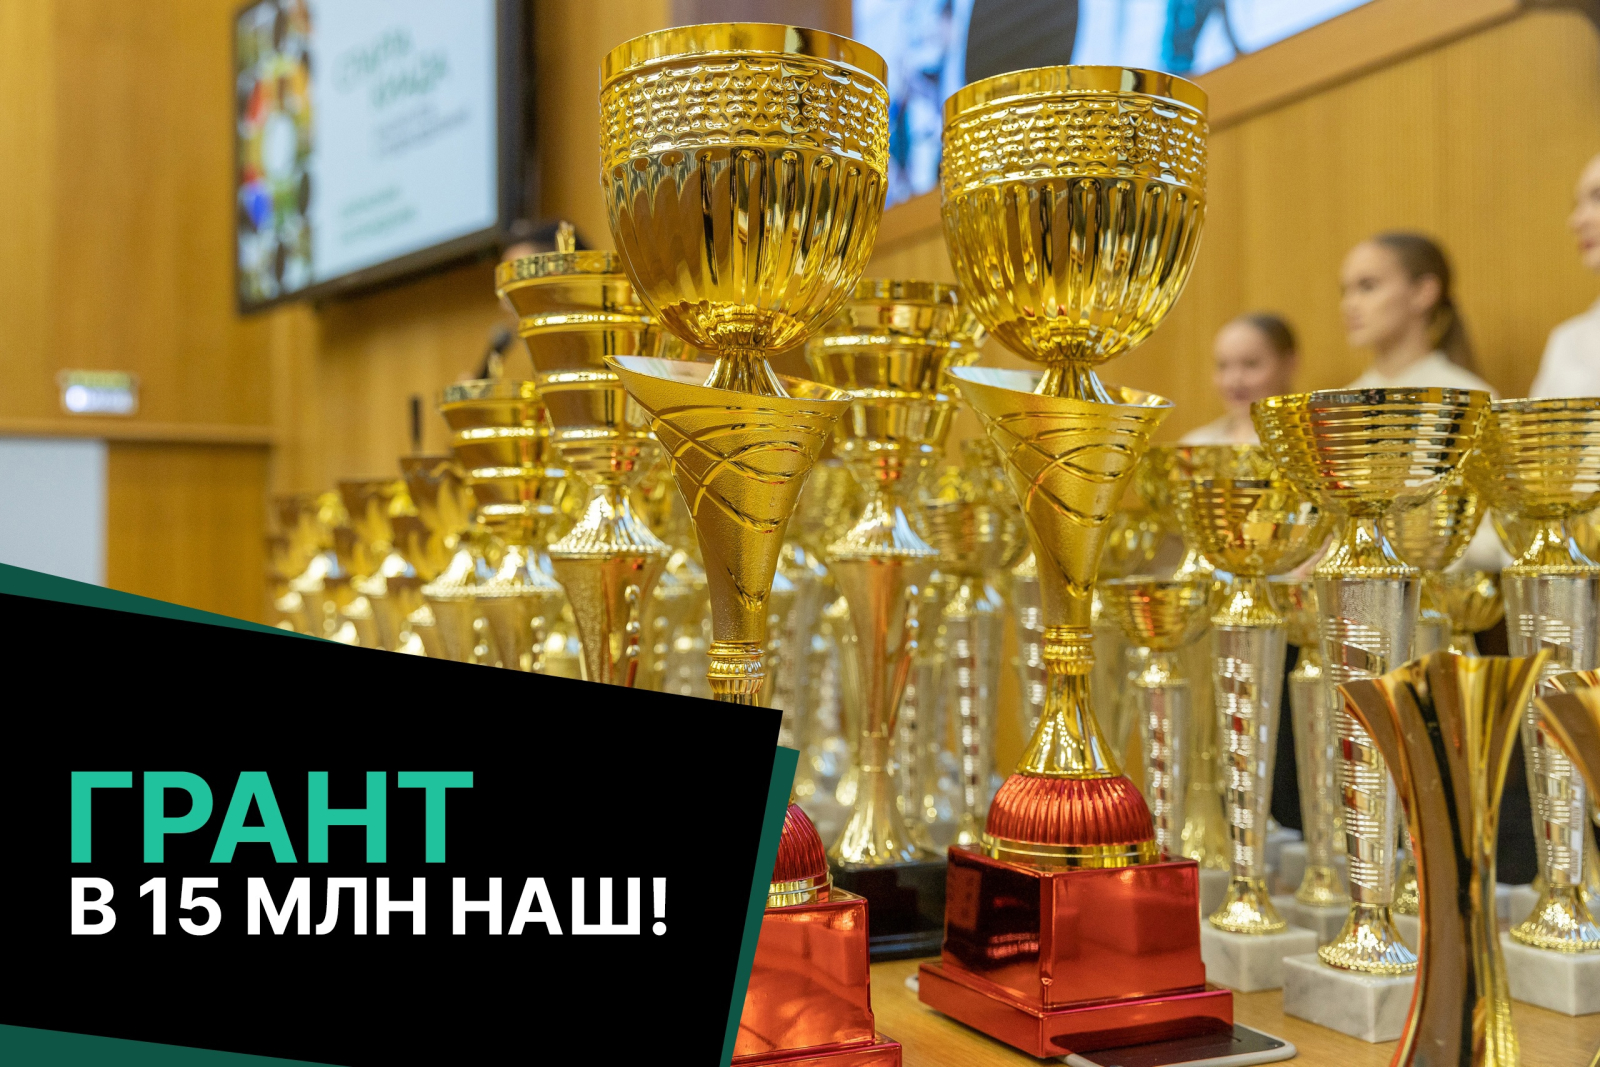 Политех выиграл грант в 15 миллионов рублей на развитие спорта!